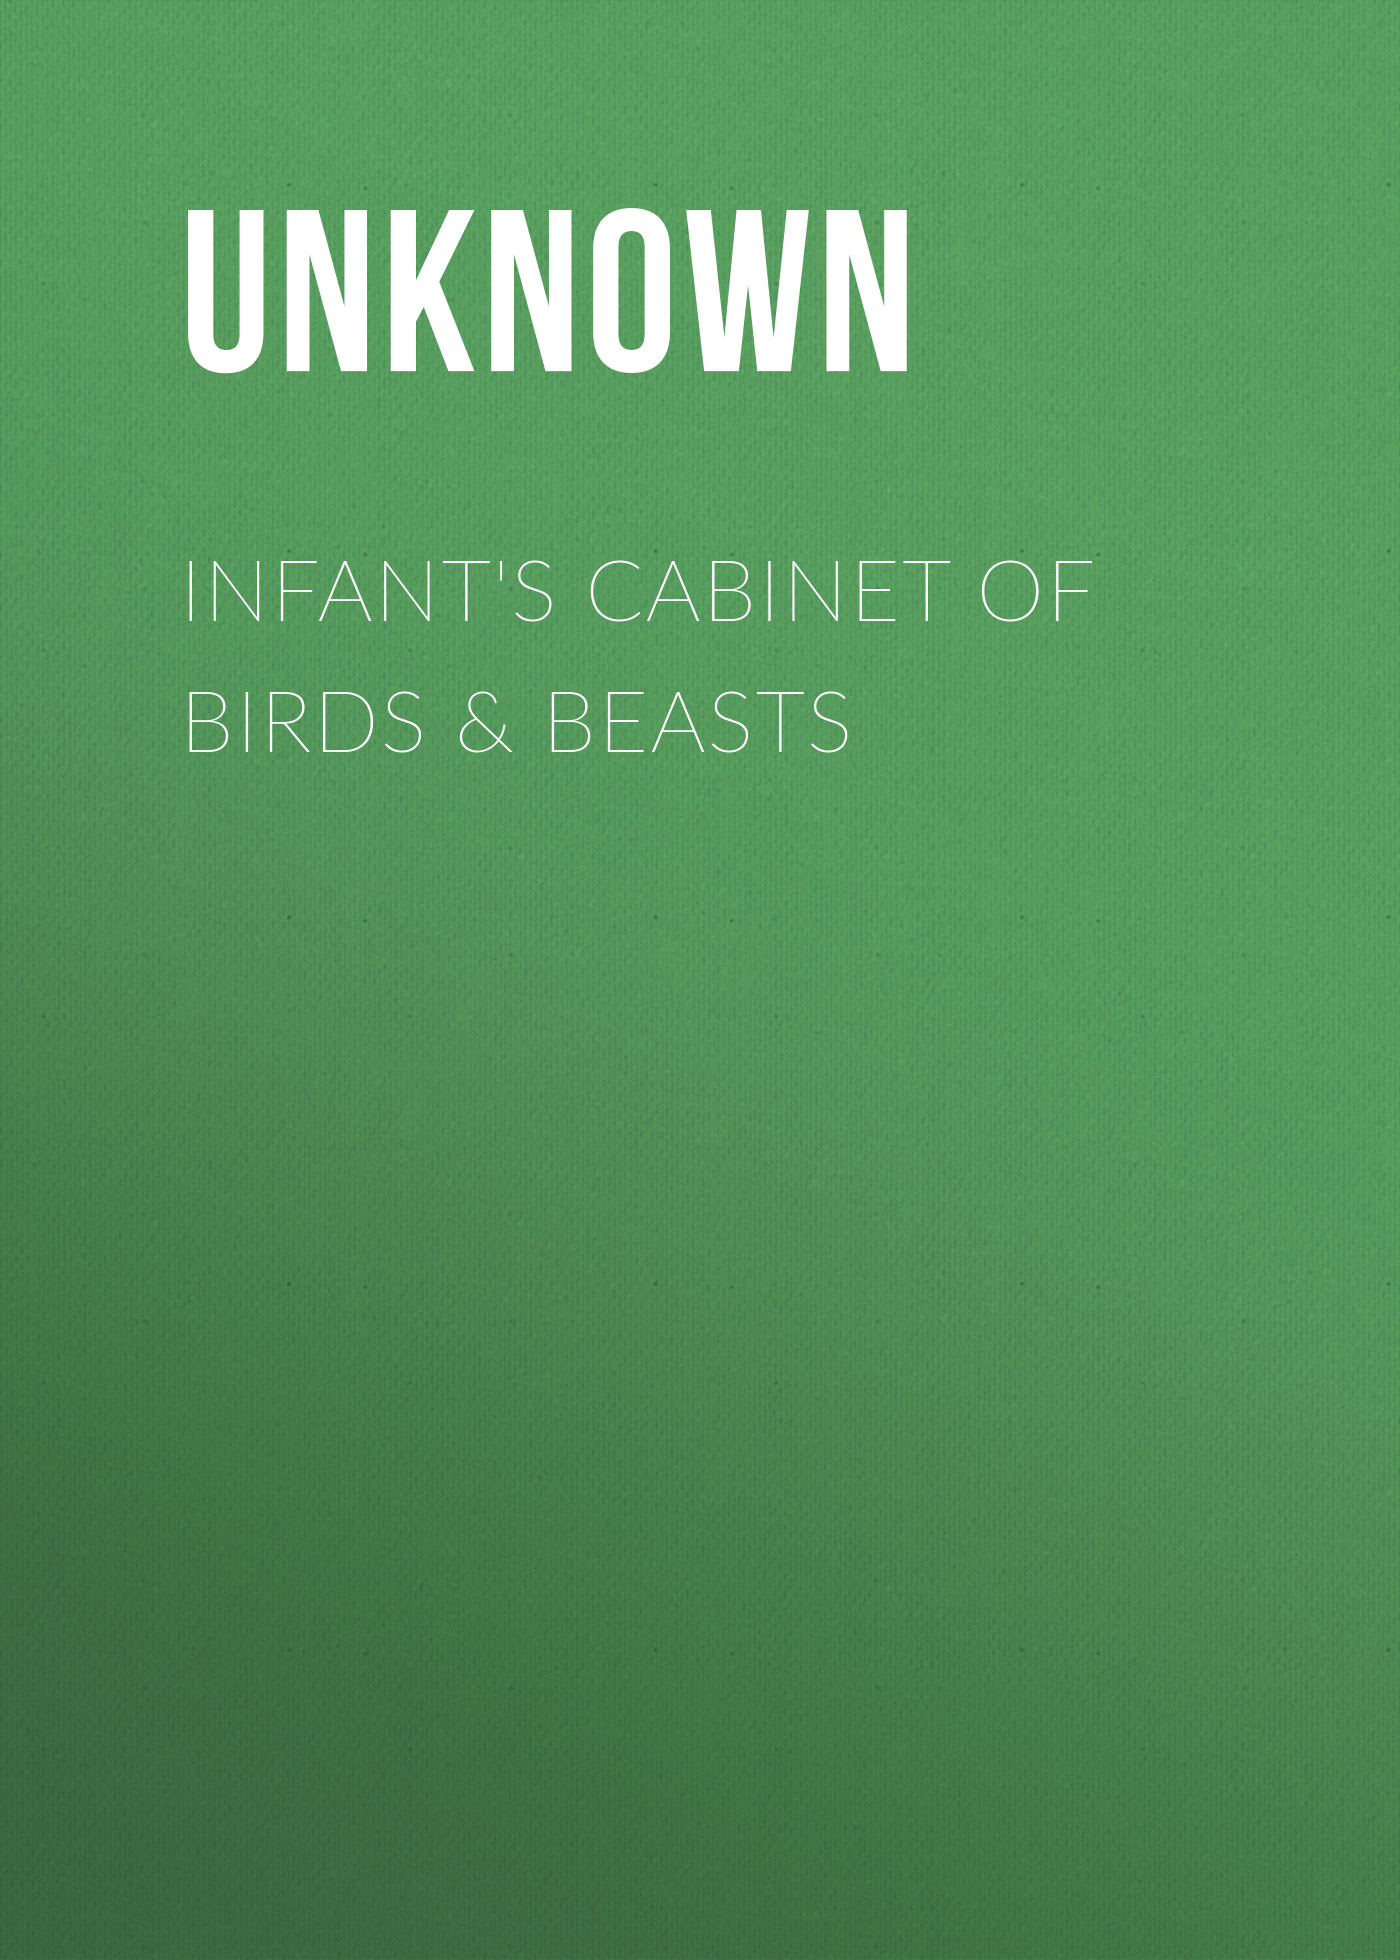 Книга Infant's Cabinet of Birds & Beasts из серии , созданная Unknown Unknown, может относится к жанру Зарубежные детские книги, Зарубежная старинная литература, Зарубежная классика. Стоимость электронной книги Infant's Cabinet of Birds & Beasts с идентификатором 35496295 составляет 0 руб.